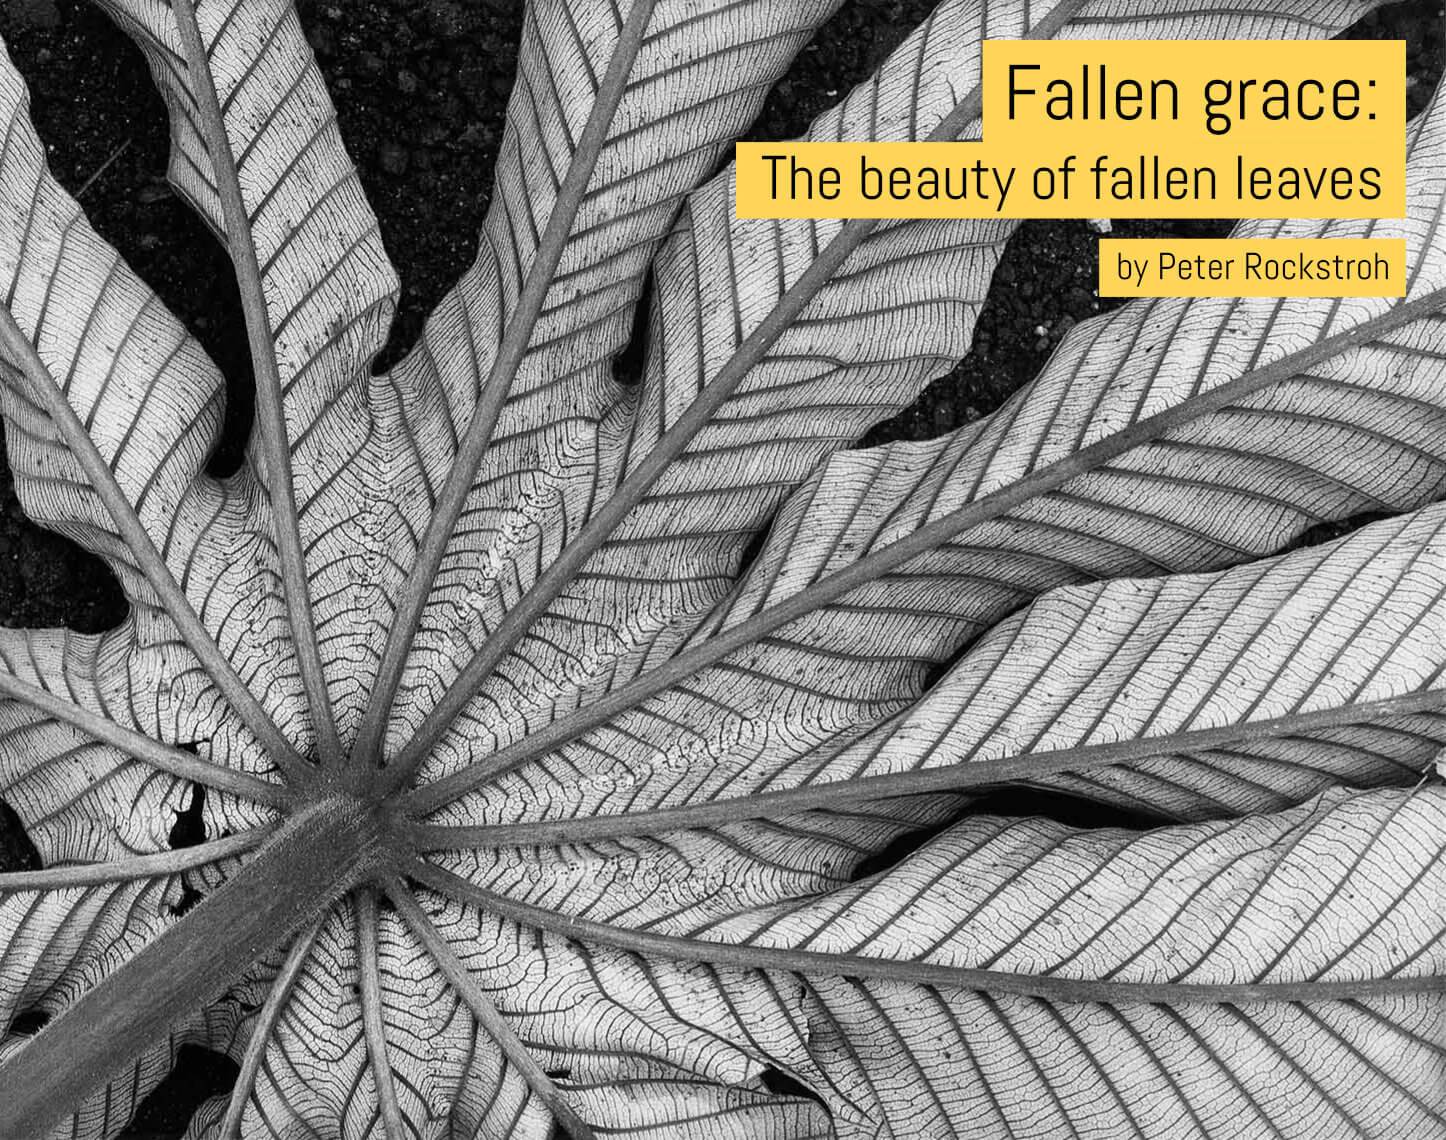 Fallen grace: The beauty of fallen leaves